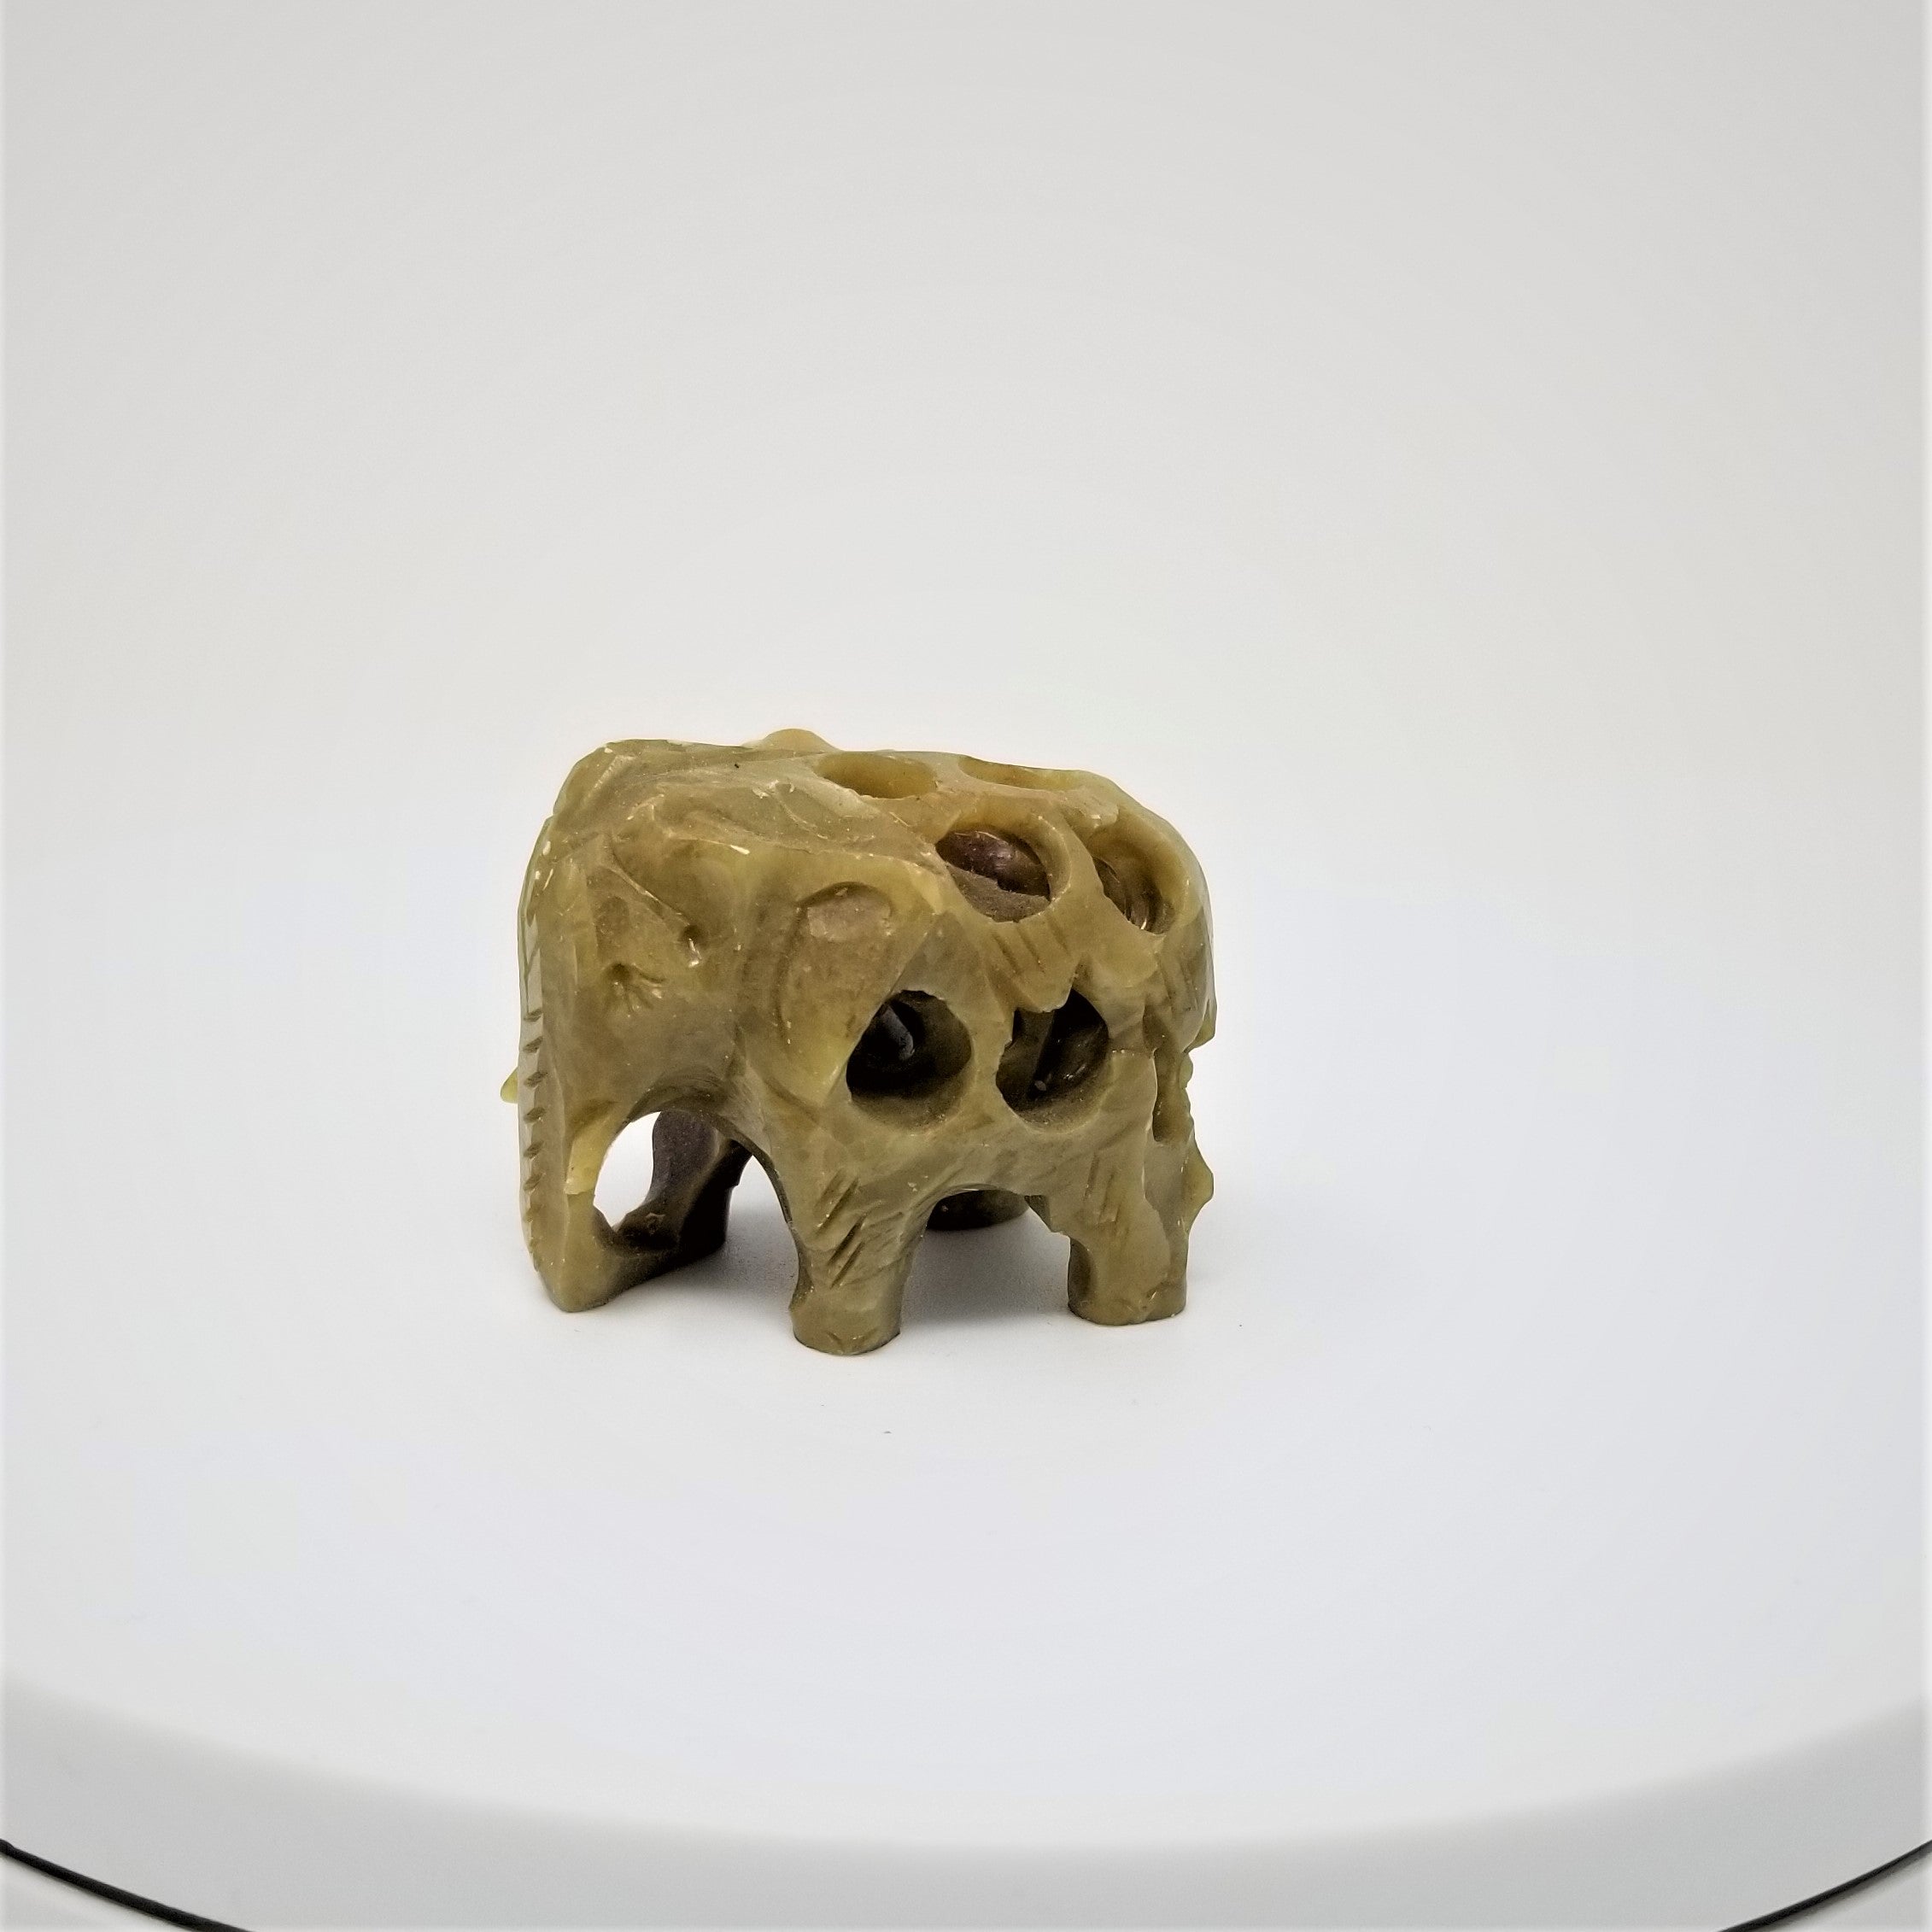 Vintage Soap Stone Elephant with baby Elephant inside Miniature Figurine